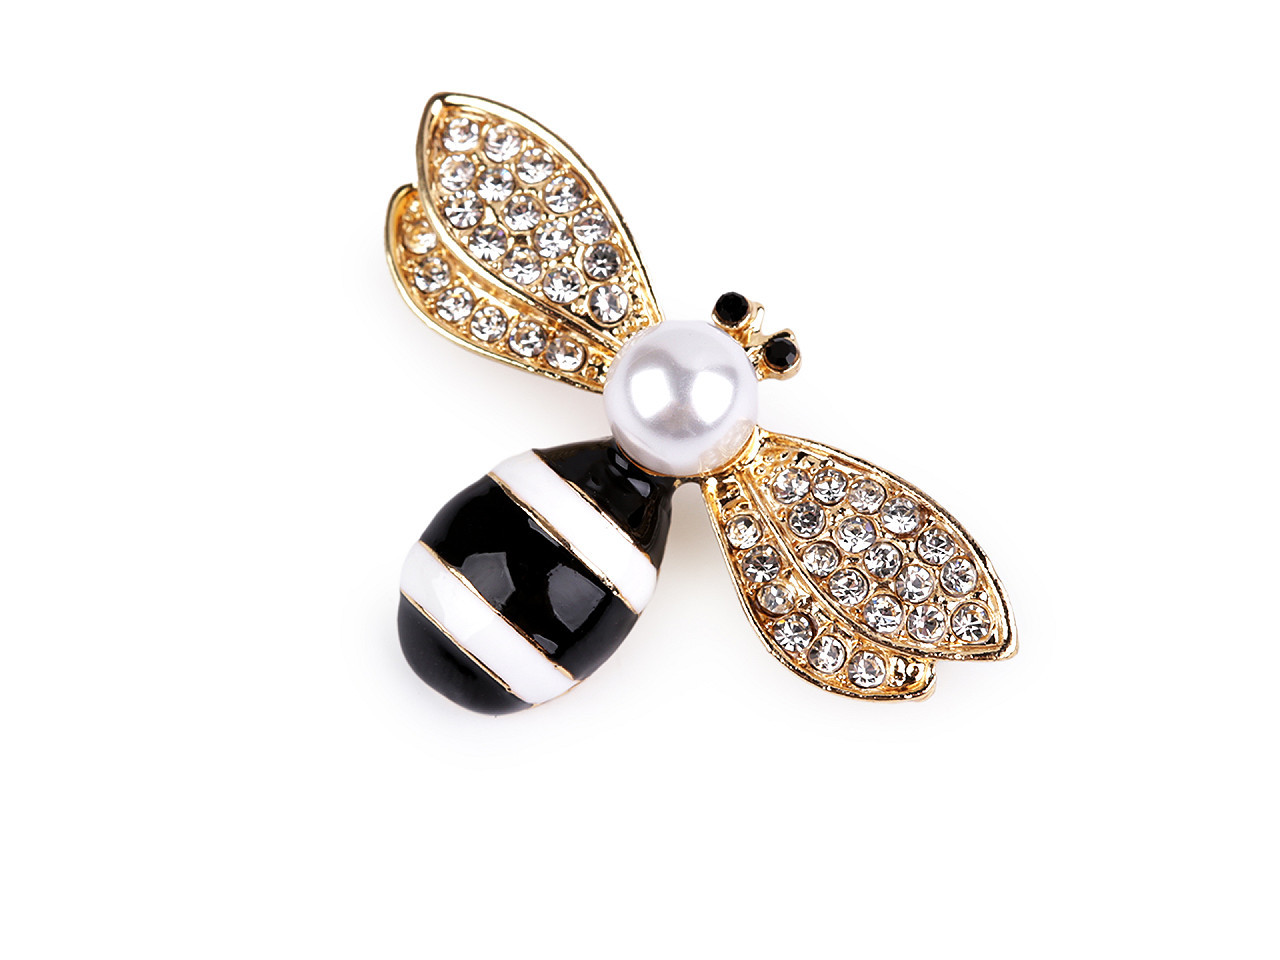 Brož s broušenými kamínky a perlou včela, barva 3 crystal zlatá